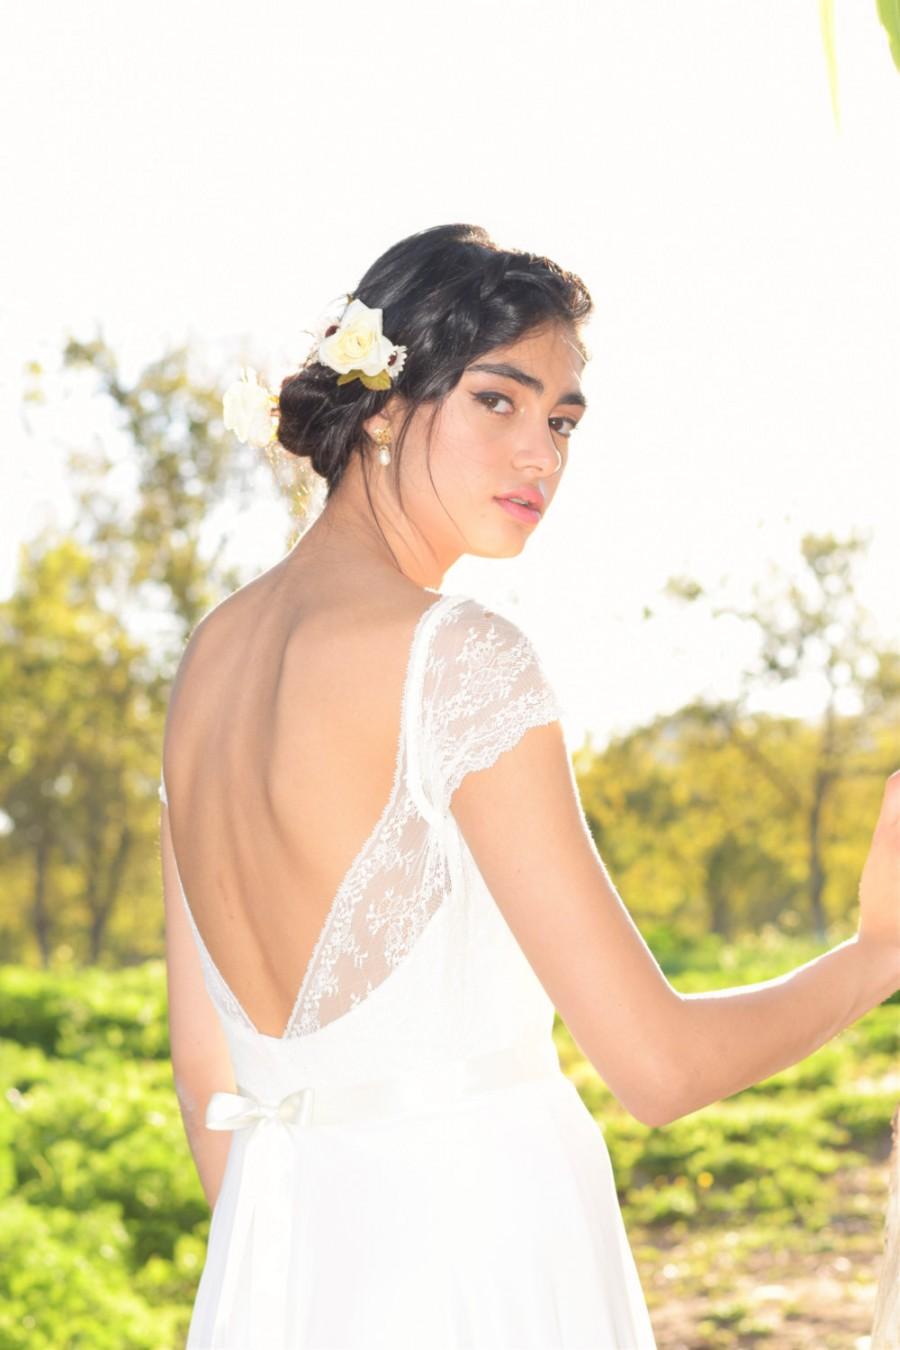 زفاف - Jenny- Boho wedding dress, lace wedding dress, beach wedding dress, wedding dress with sleeves